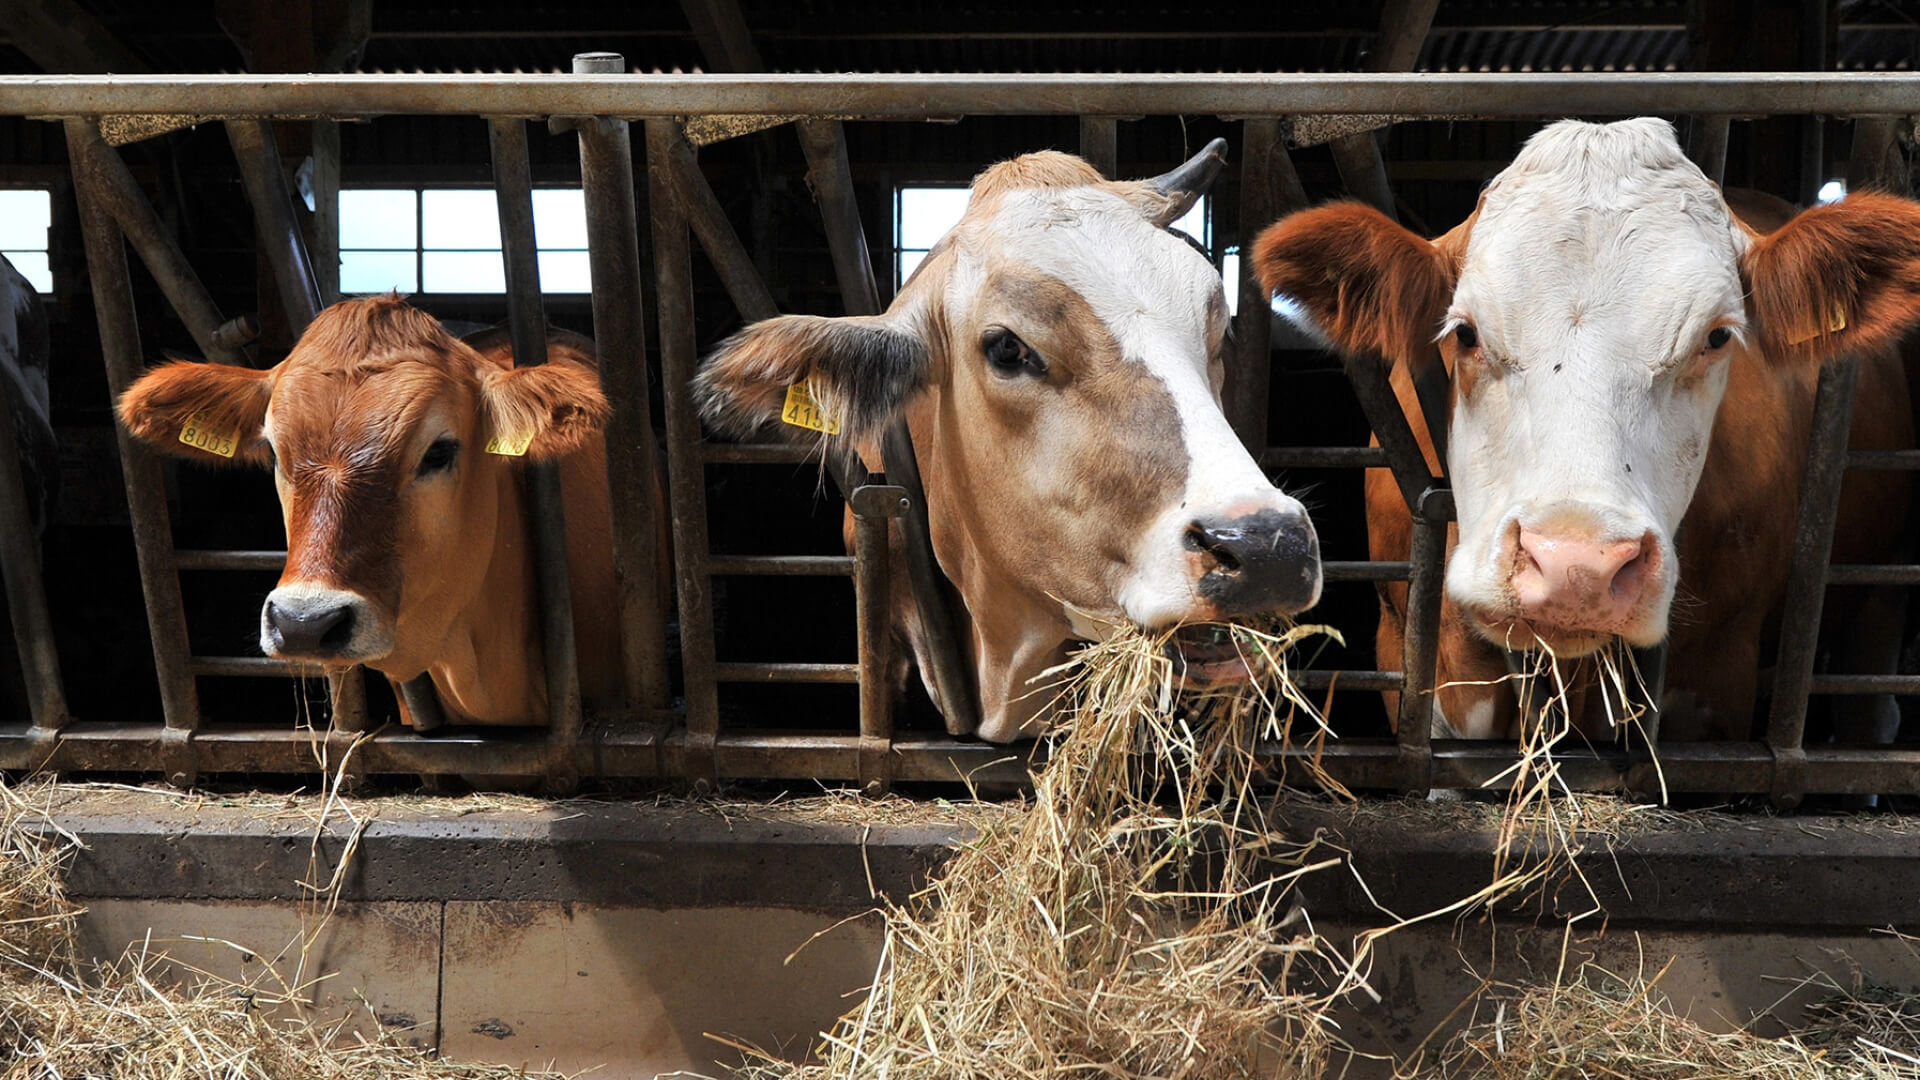 zwei Kühe in einem offenen Stall, Recycling von Abfällen in der tierverarbeitenden Industrie